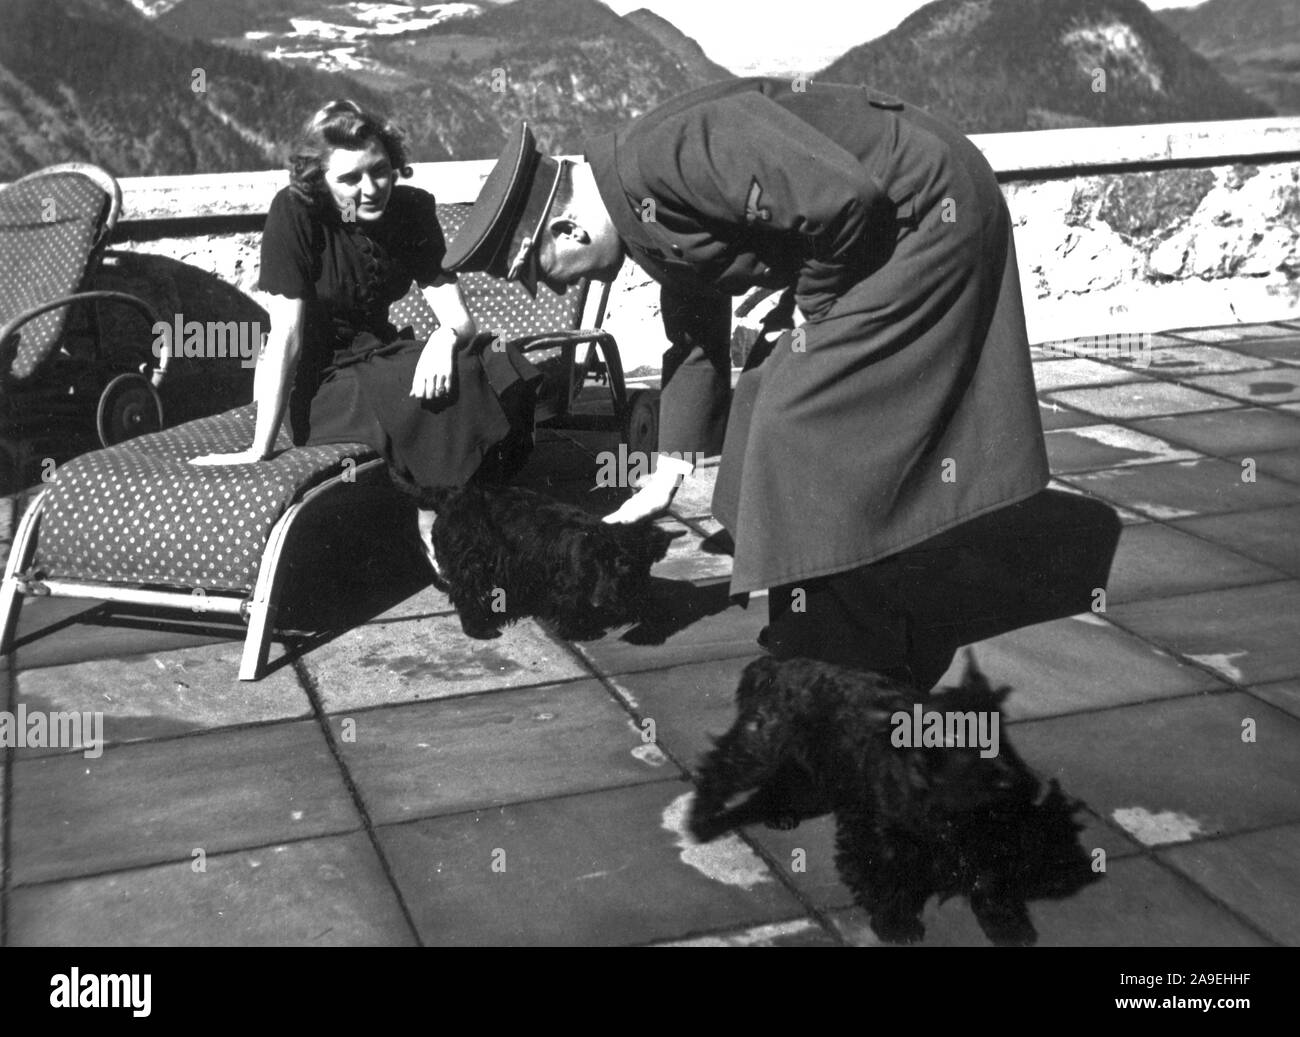 Eva Braun Colección (dvadvadaset) - Adolf Hitler acariciándole Eva Braun Scottish Terrier perros ca. finales de 1930 o principios de 1940 Foto de stock